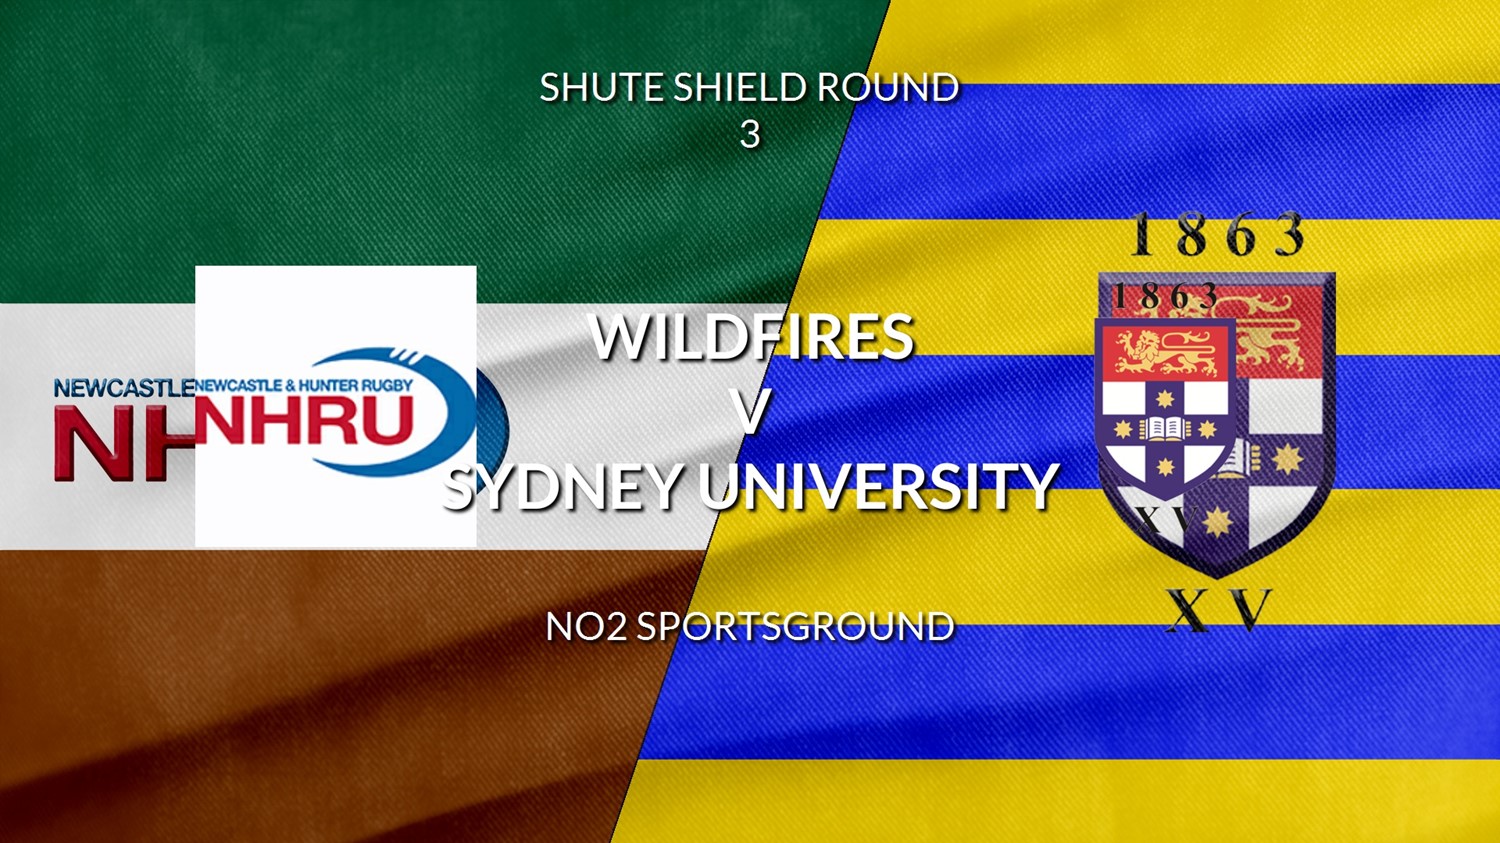 Shute Shield - Colts - Round 3 - NHRU Wildfires v Sydney University Minigame Slate Image